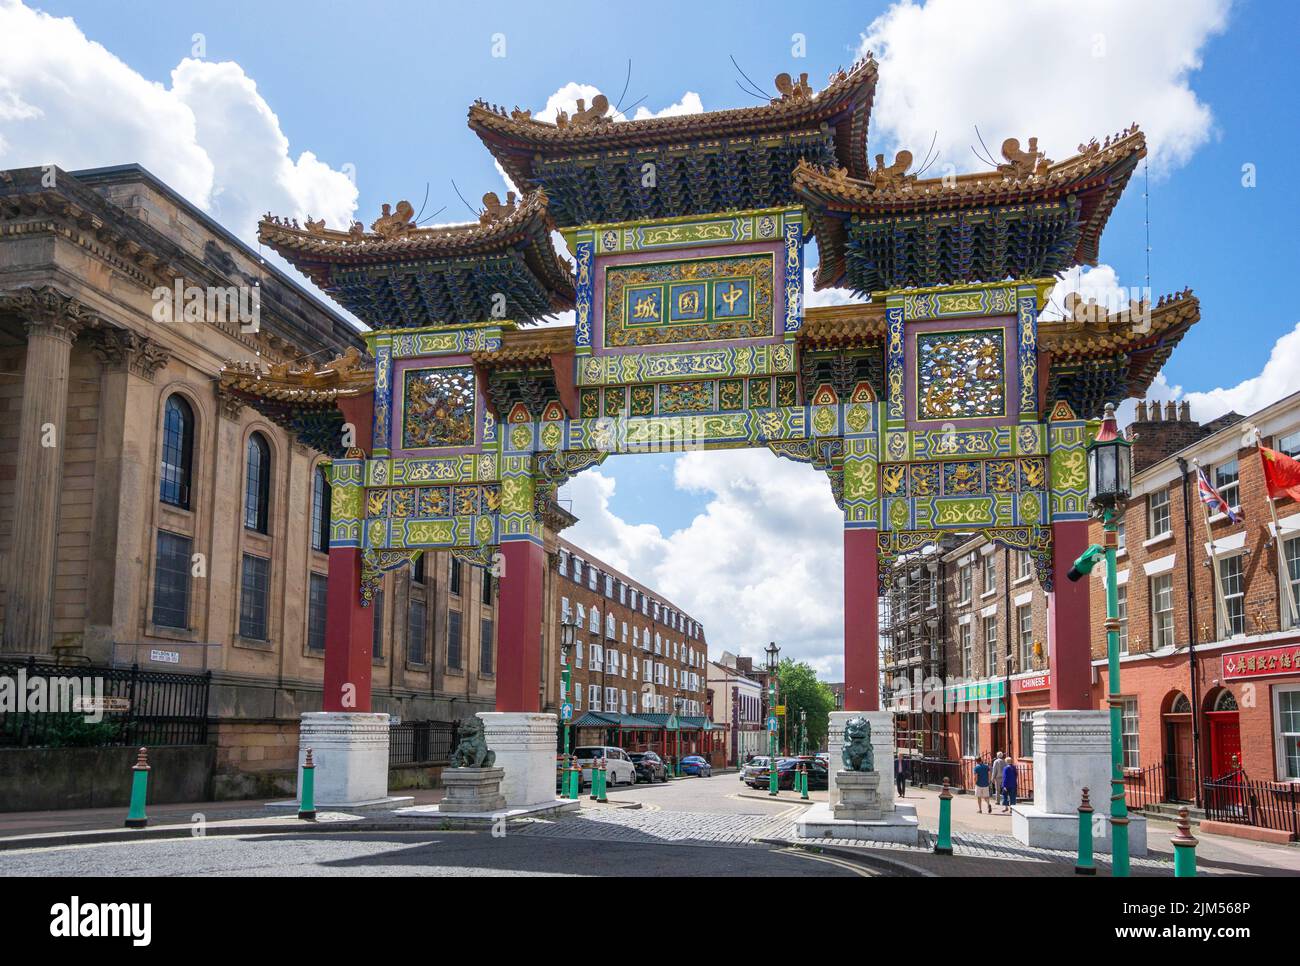 Chinese Arch en el barrio chino de Liverpool, el arco más grande fuera de China Foto de stock